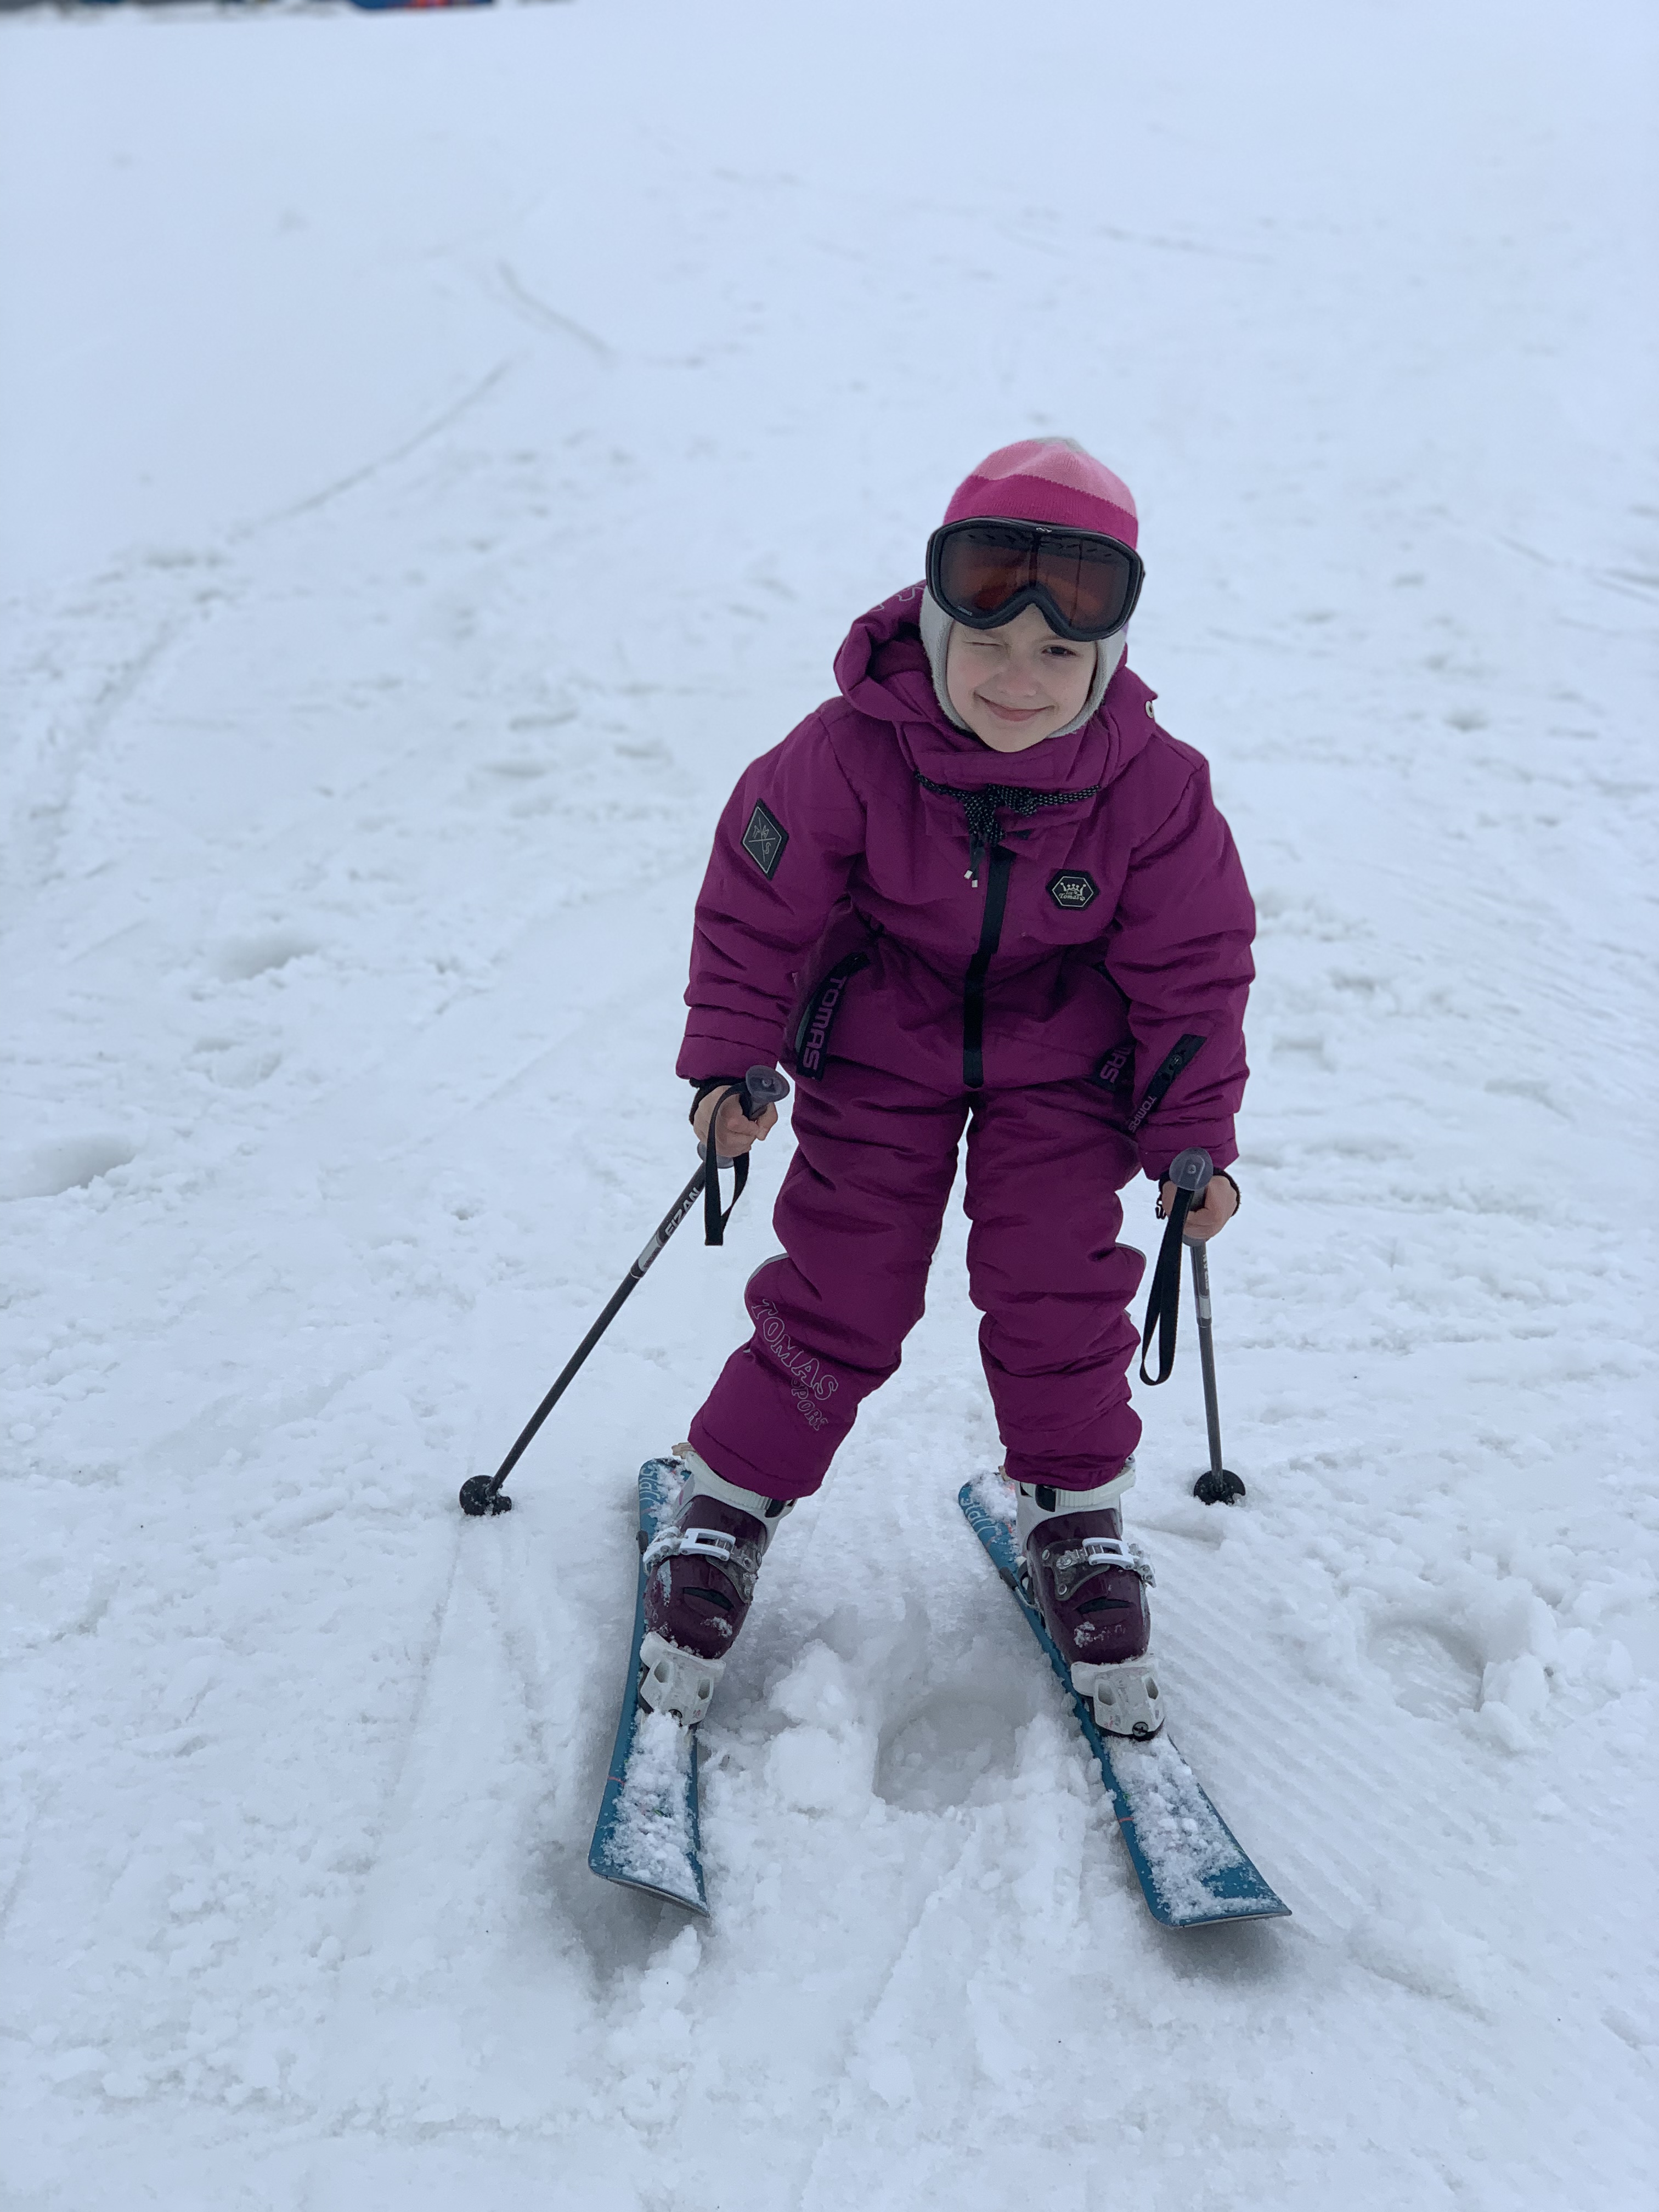 Горнолыжный курорт "Большой Вудъявр"
Аделина учится кататься на лыжах!